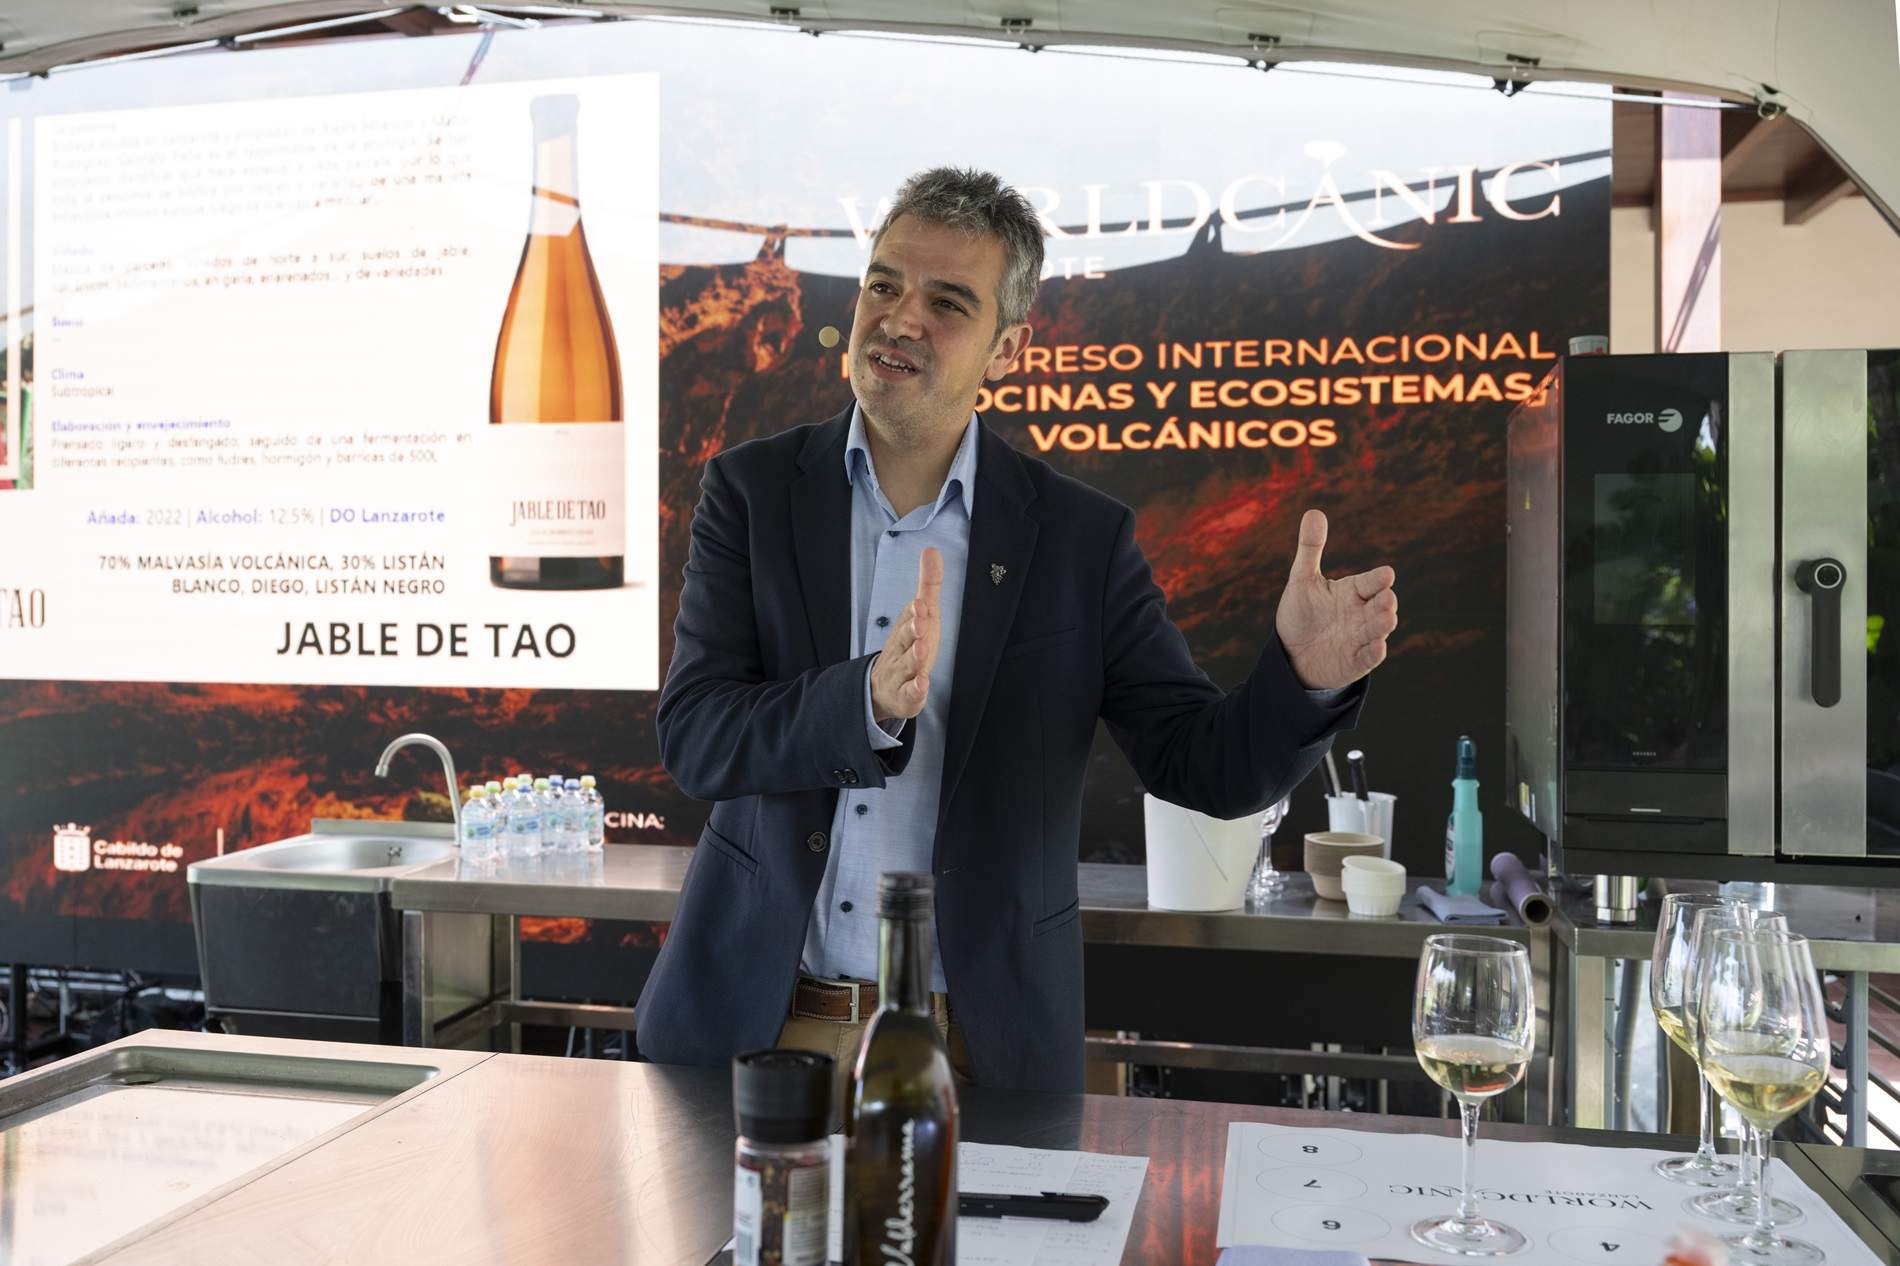 ¿Qué sabor tienen los vinos volcánicos? Un viaje desde Sitges hasta Lanzarote y Europa